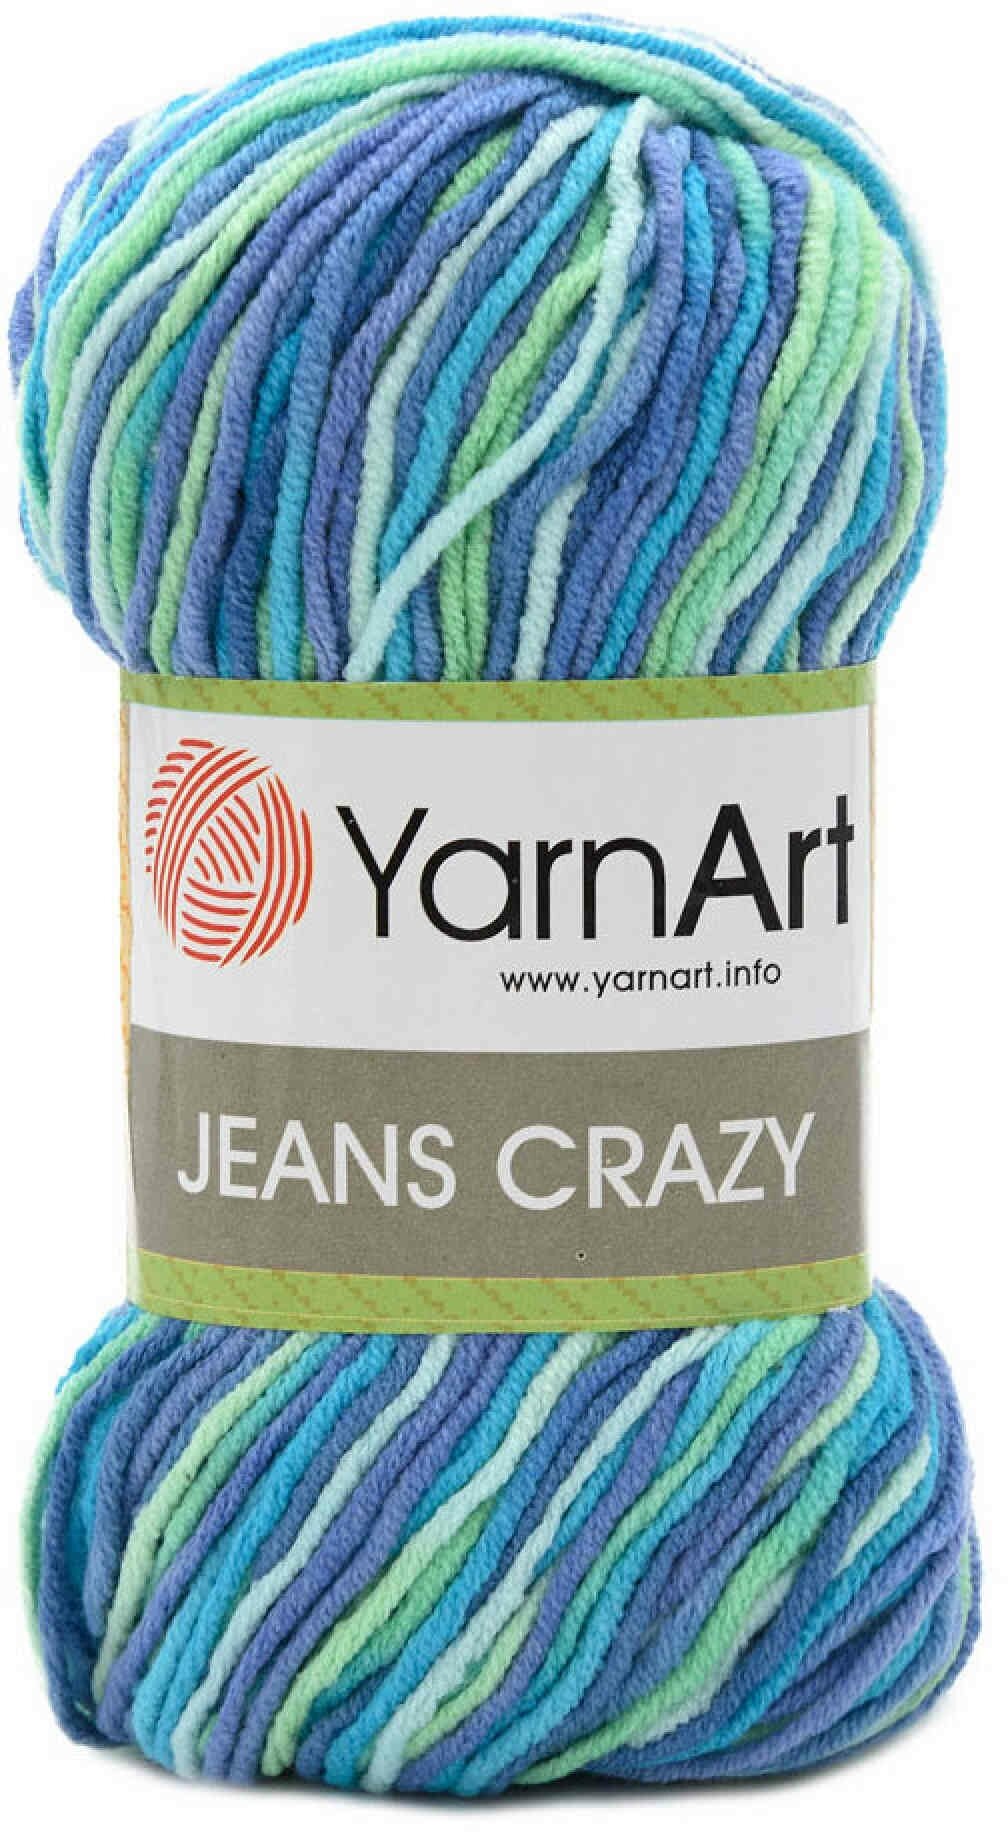 Пряжа YarnArt Jeans CRAZY светло-голубой-бирюзовый-сиреневый-мятный меланж (7204), 55%хлопок/45%акрил, 160м, 50г, 1шт